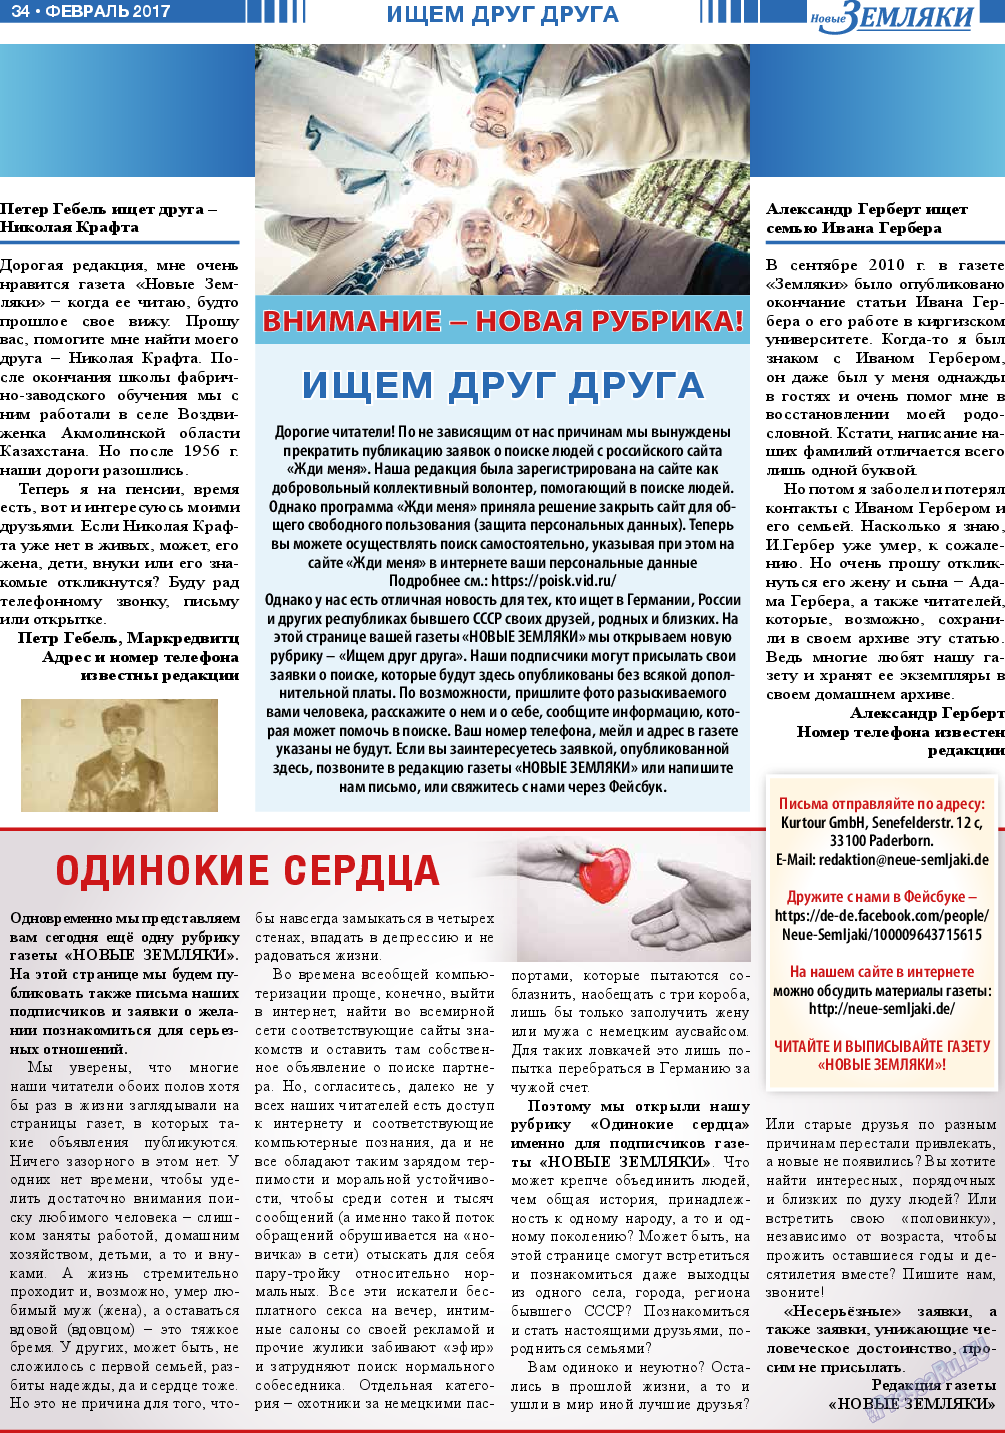 Новые Земляки (газета). 2017 год, номер 2, стр. 34